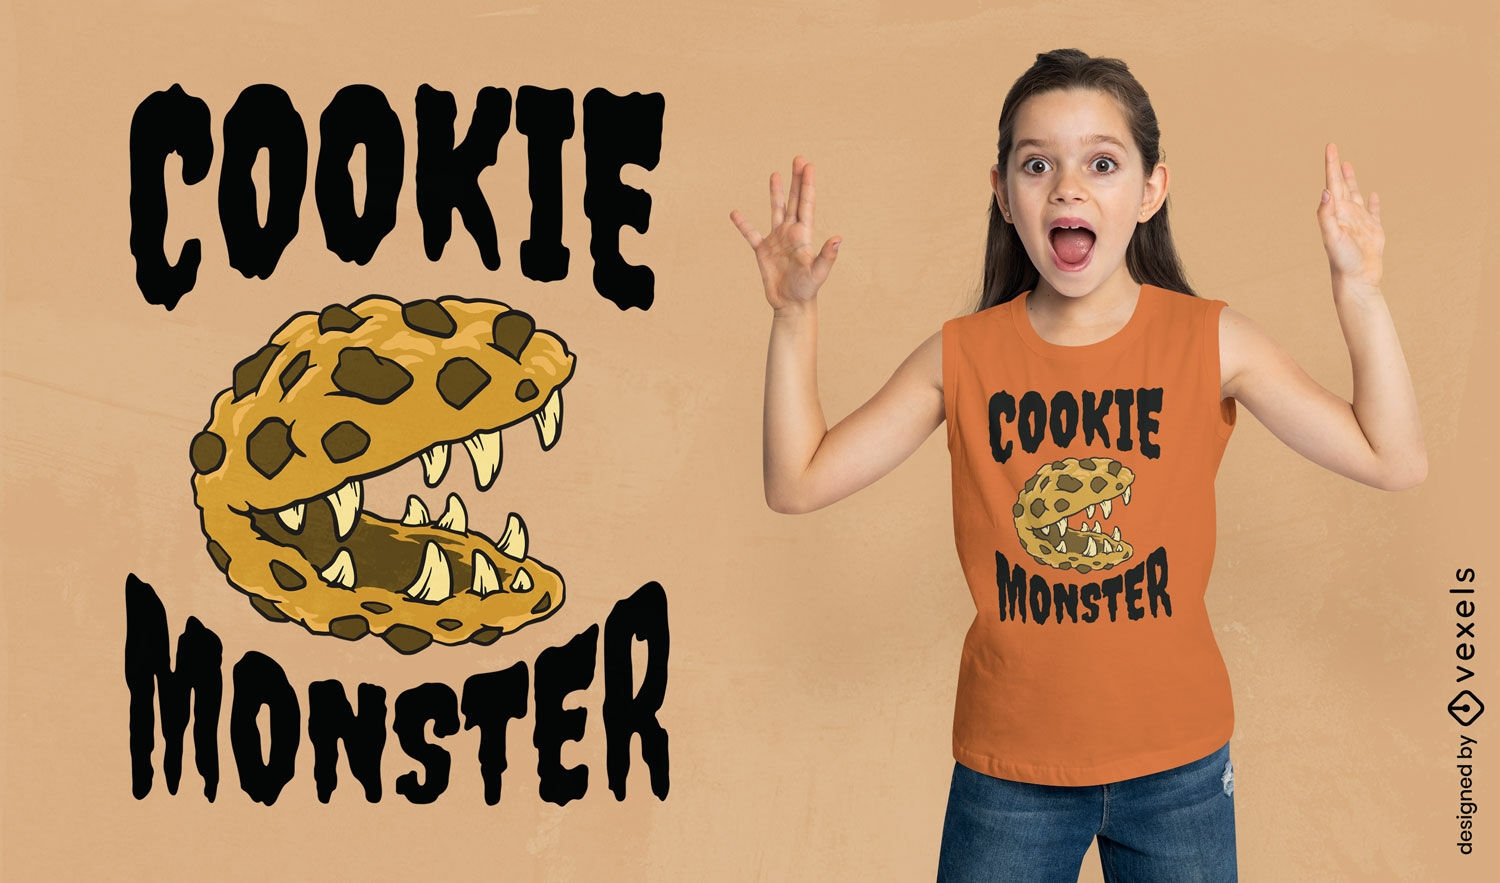 Dise?o de camiseta del monstruo de las galletas.